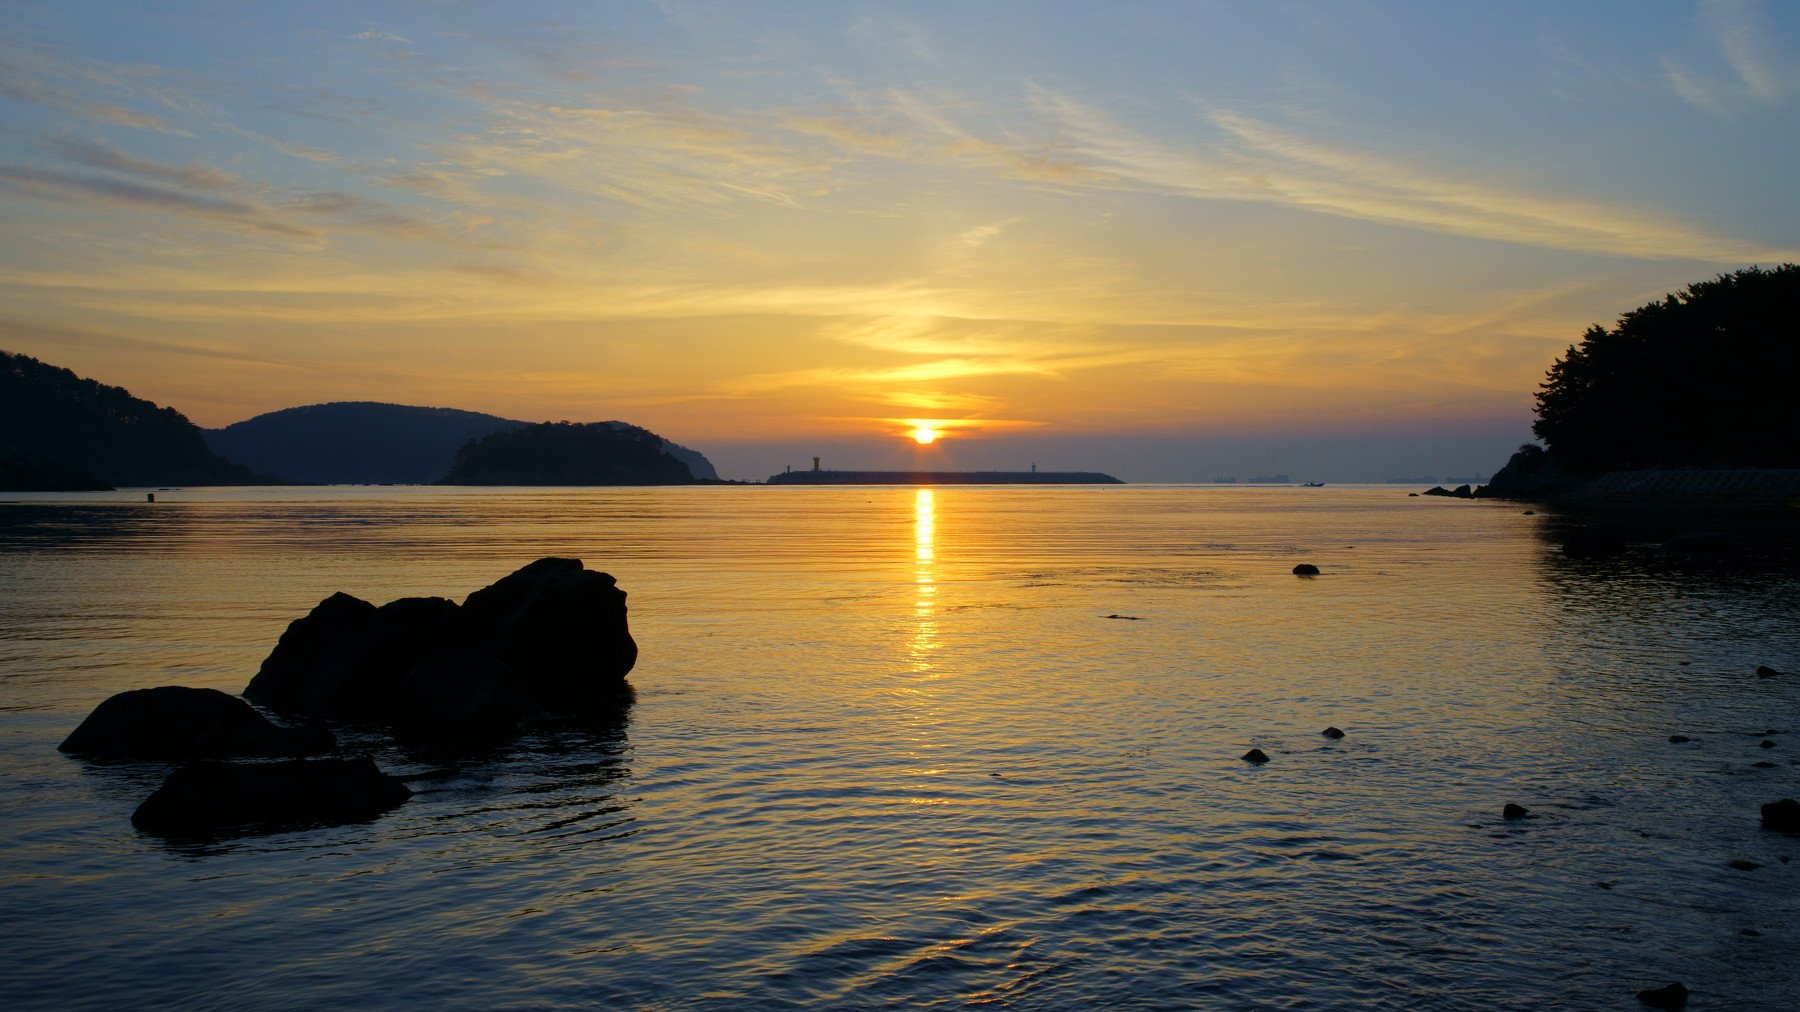 south korea, ulsan, sea, seascape, sunrise, light, boat, sun, clouds, ships, reflection, rocks, island, mountain, Shin